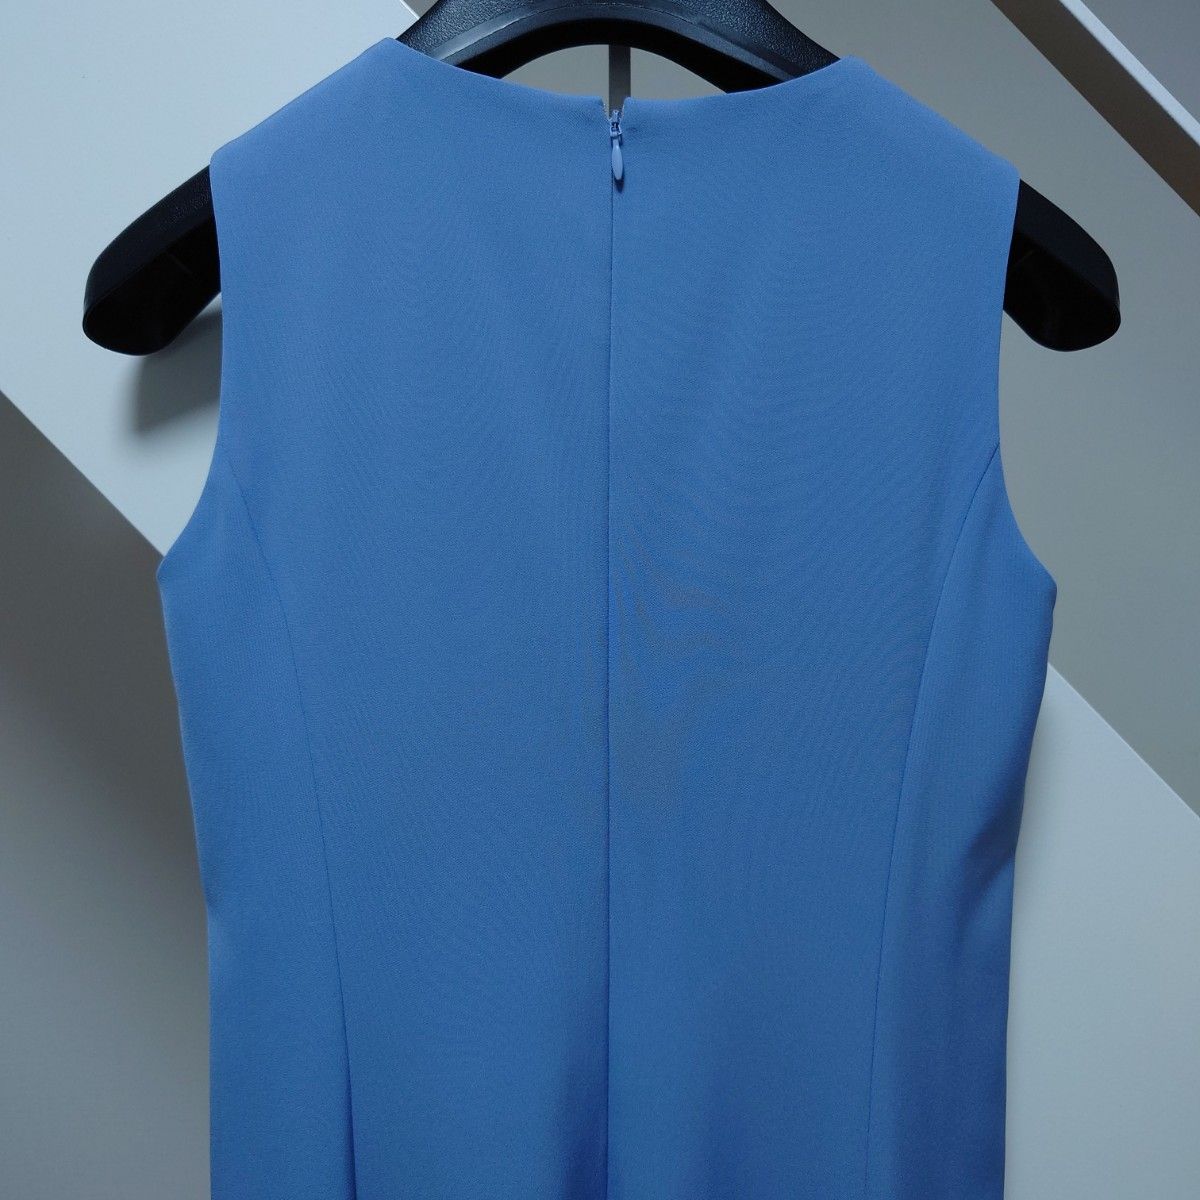 BARNEYS NEW YORK バーニーズニューヨーク レディース ノースリーブ ブルー 水色 ワンピース ドレス 36